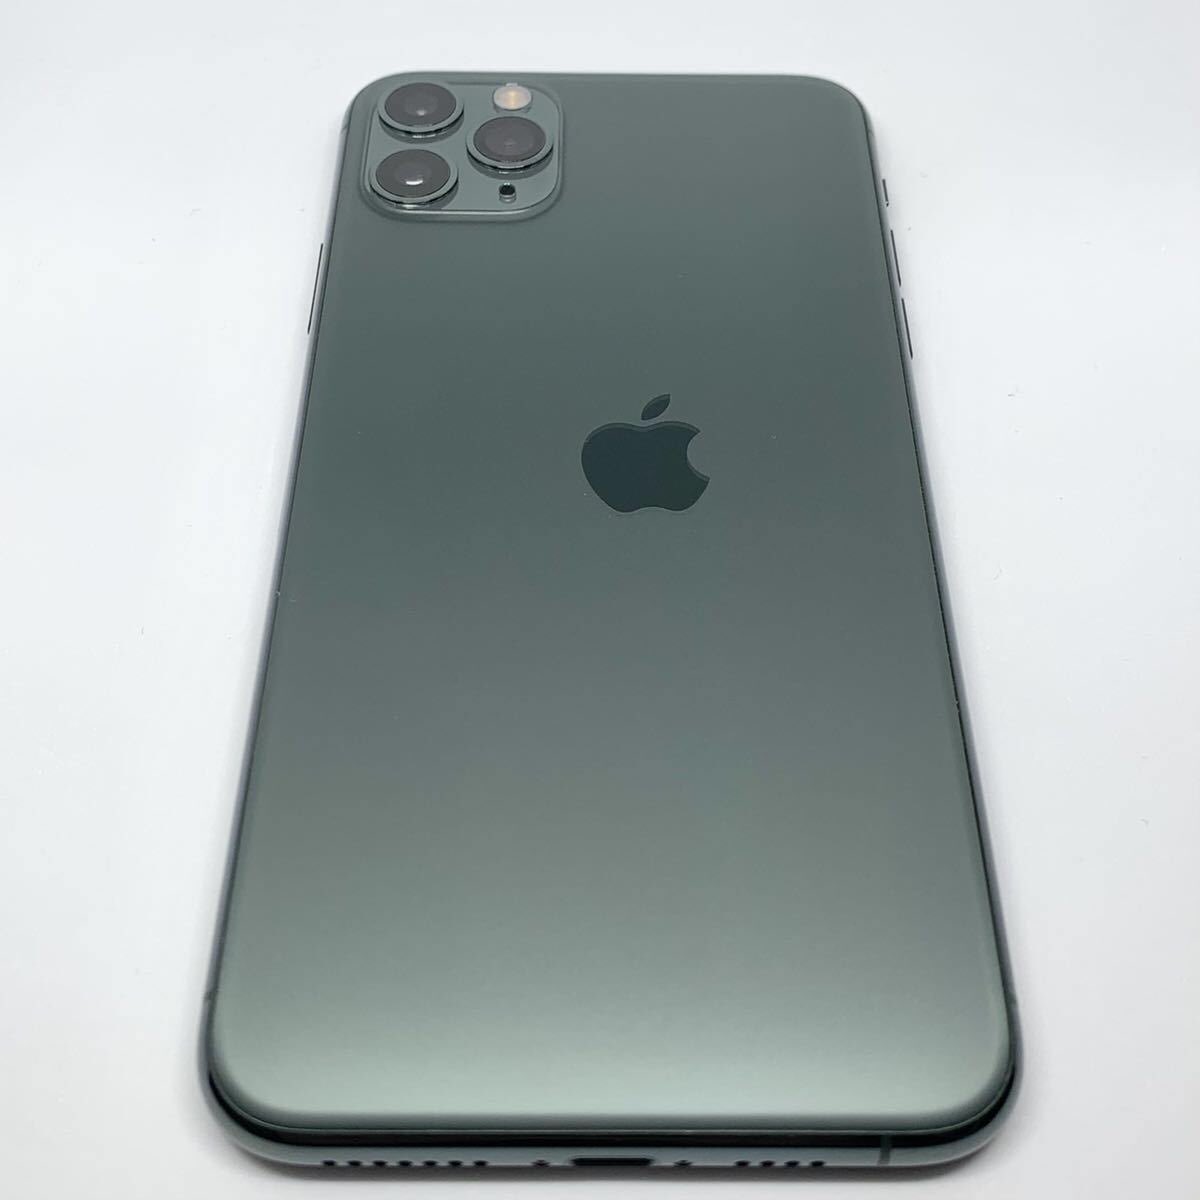 iPhone 11 Pro con defecto de fabricación mostrando un logo de Apple desalineado